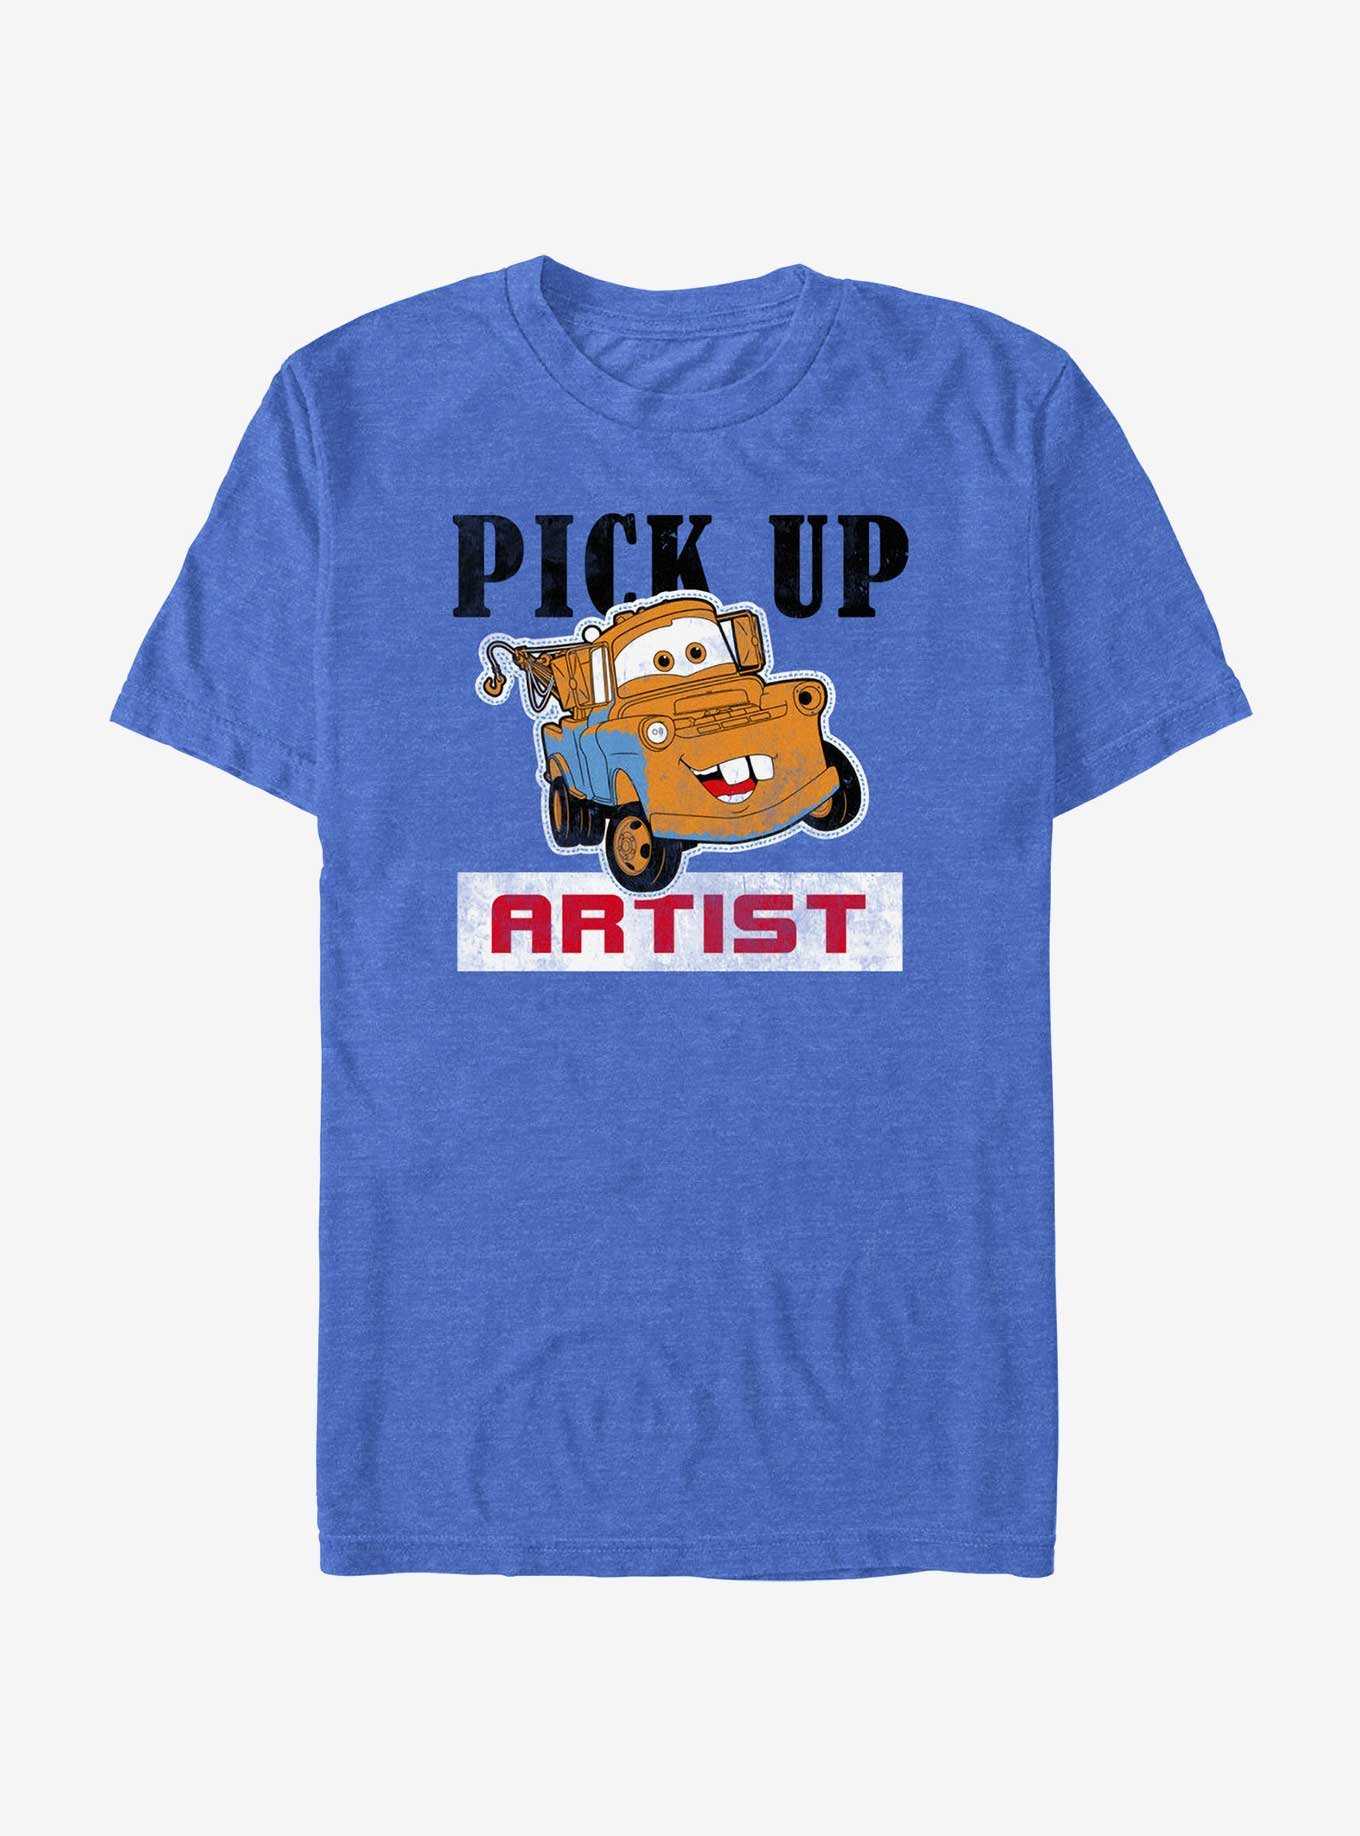 Disney Pixar Cars Pickup Artist Mater T-Shirt, , hi-res